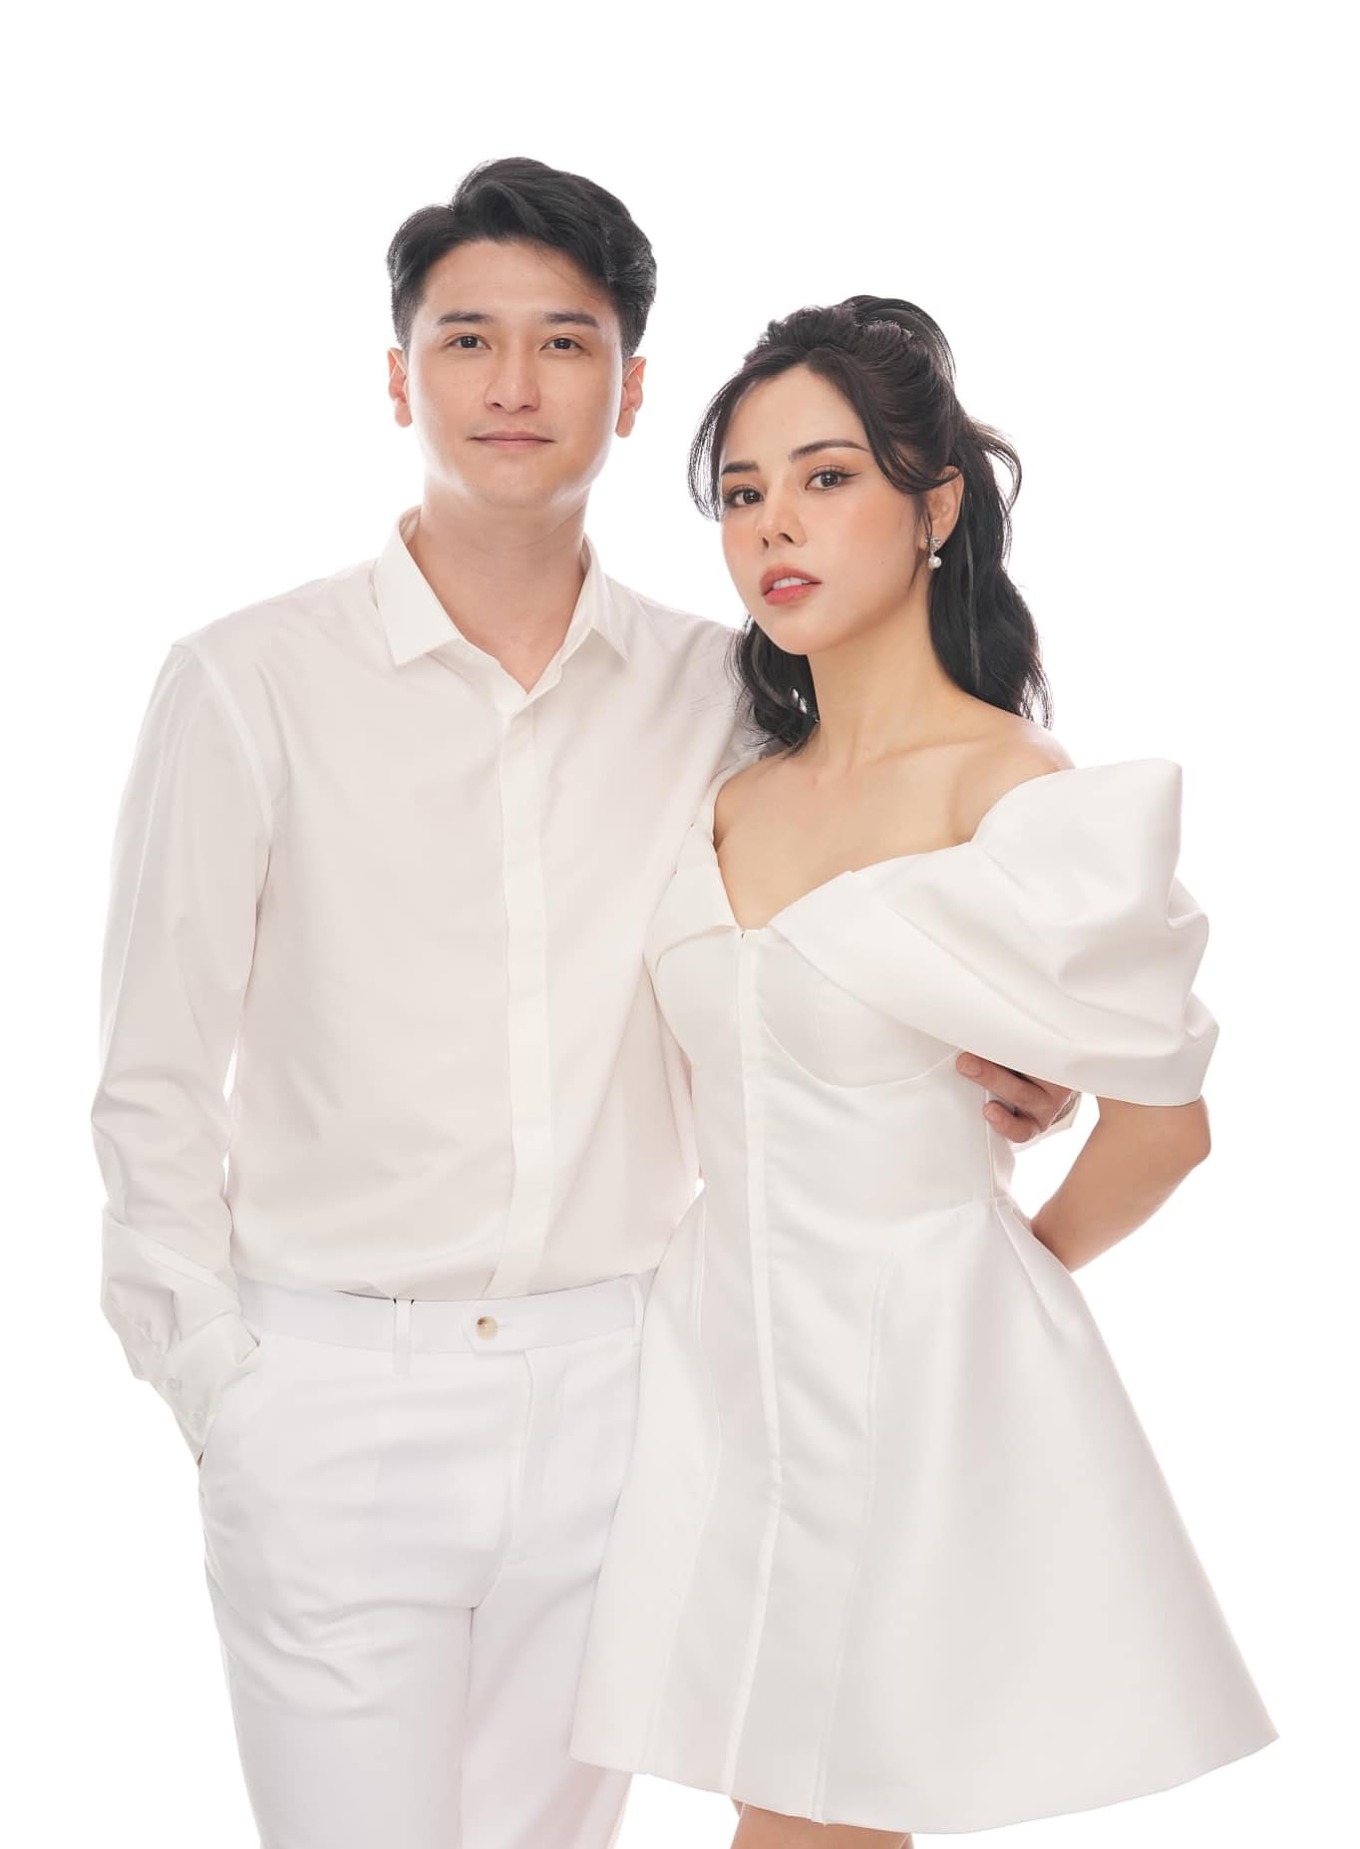 Diễn viên Huỳnh Anh và bạn gái MC hơn 6 tuổi chính thức đăng ký kết hôn sau hơn 4 năm yêu- Ảnh 11.